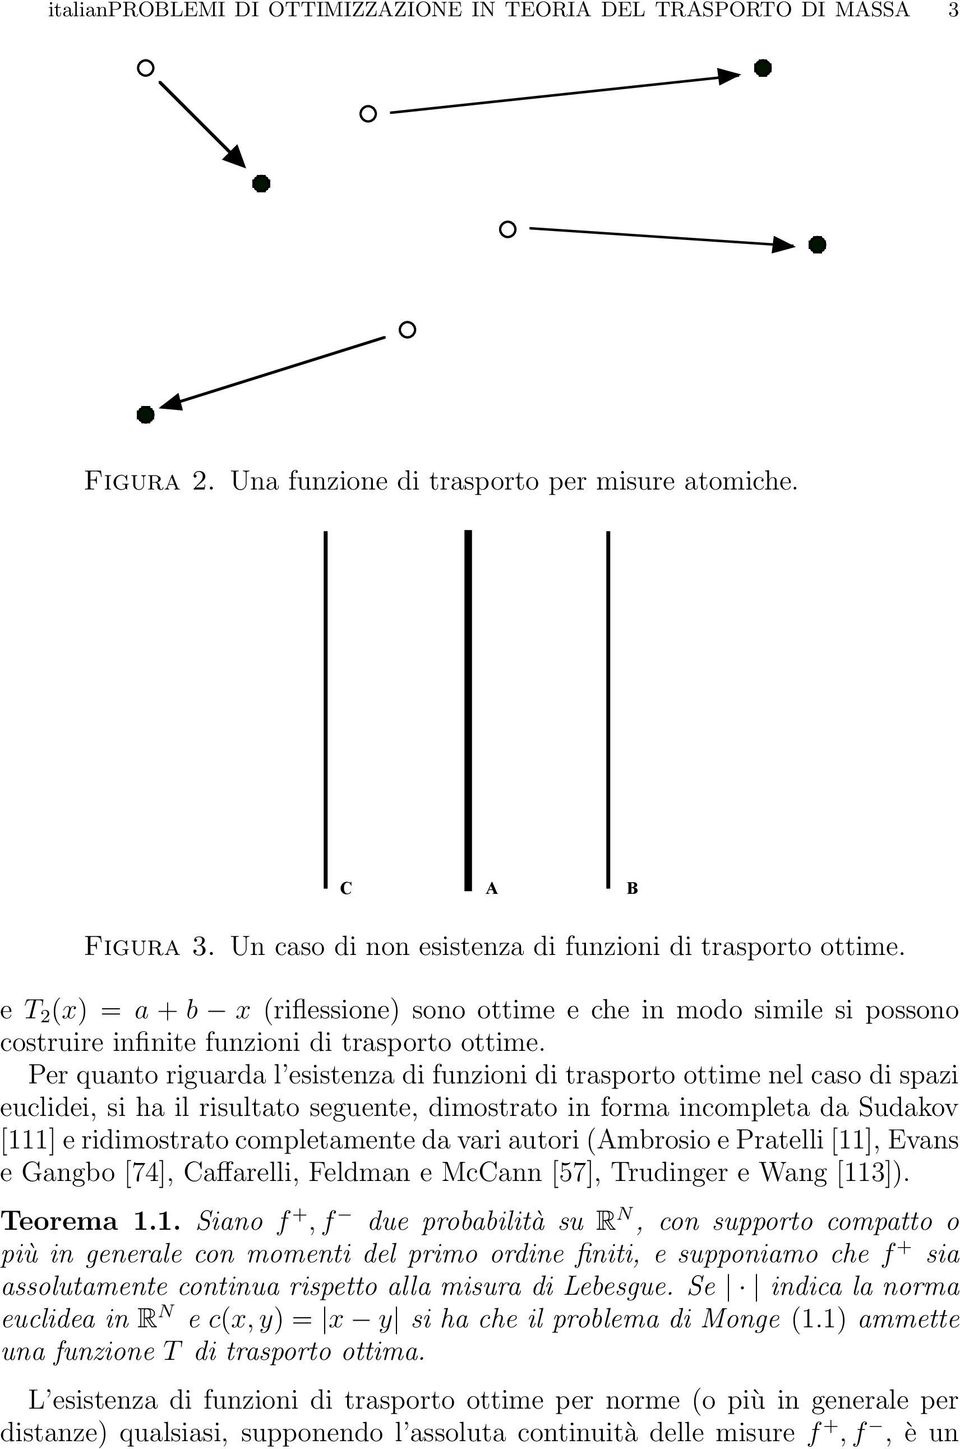 Per quanto riguarda l esistenza di funzioni di trasporto ottime nel caso di spazi euclidei, si ha il risultato seguente, dimostrato in forma incompleta da Sudakov [111] e ridimostrato completamente